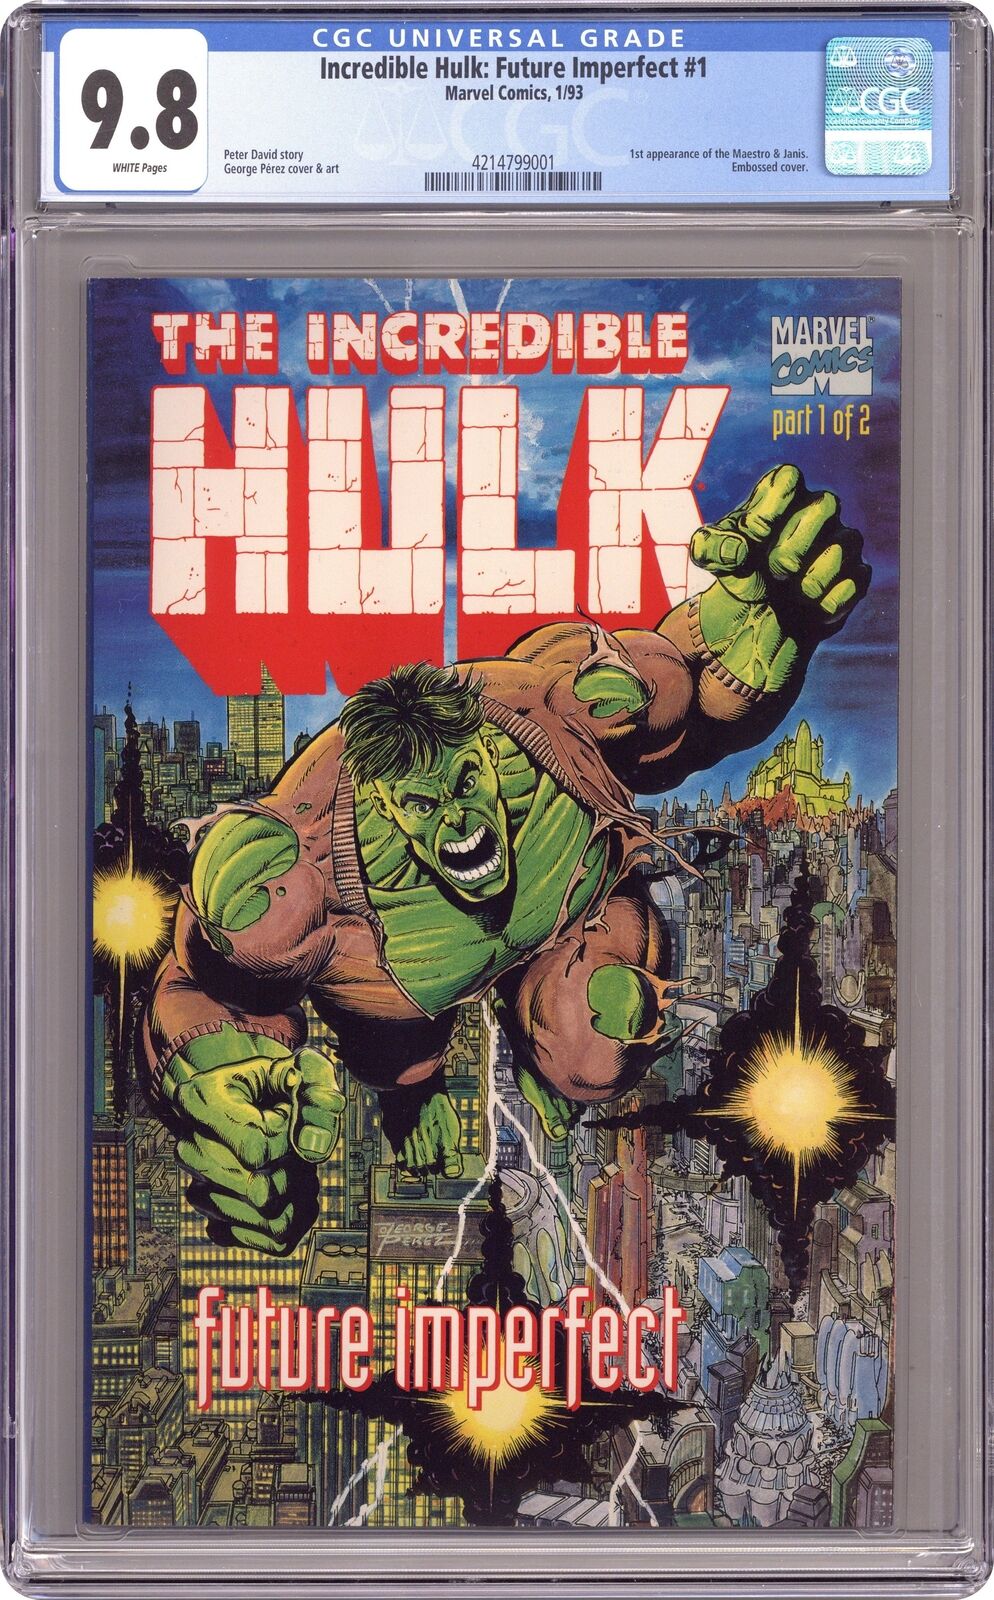 Hulk Future Imperfect #1 CGC 9.8 1992 4214799001 1st app. Maestro